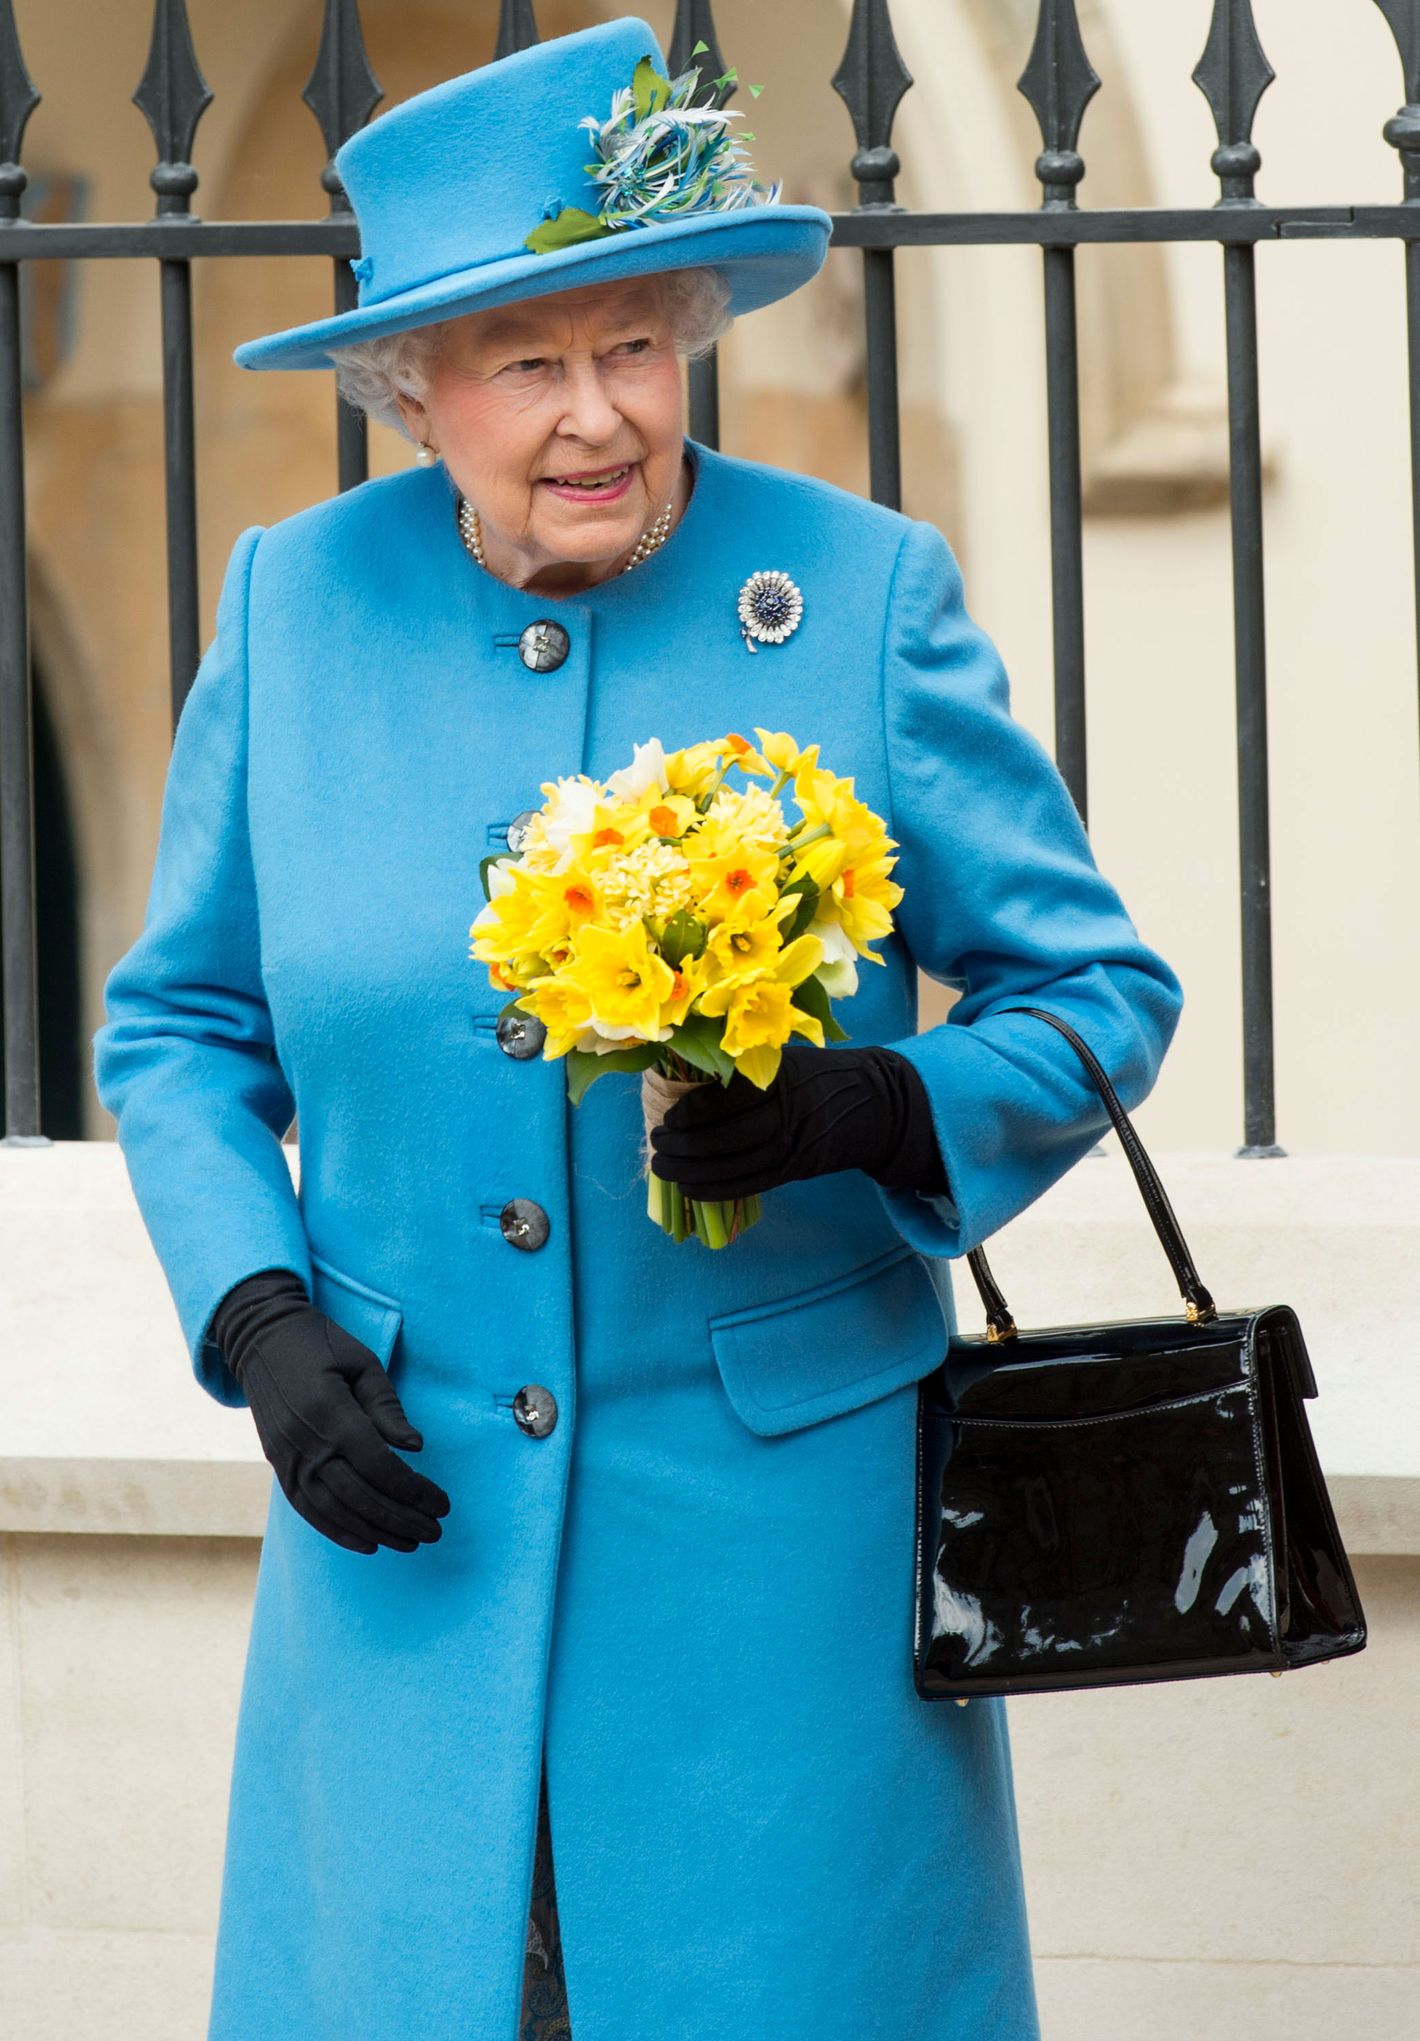 Queen's favourite handbag brand owner reveals he's making Launer